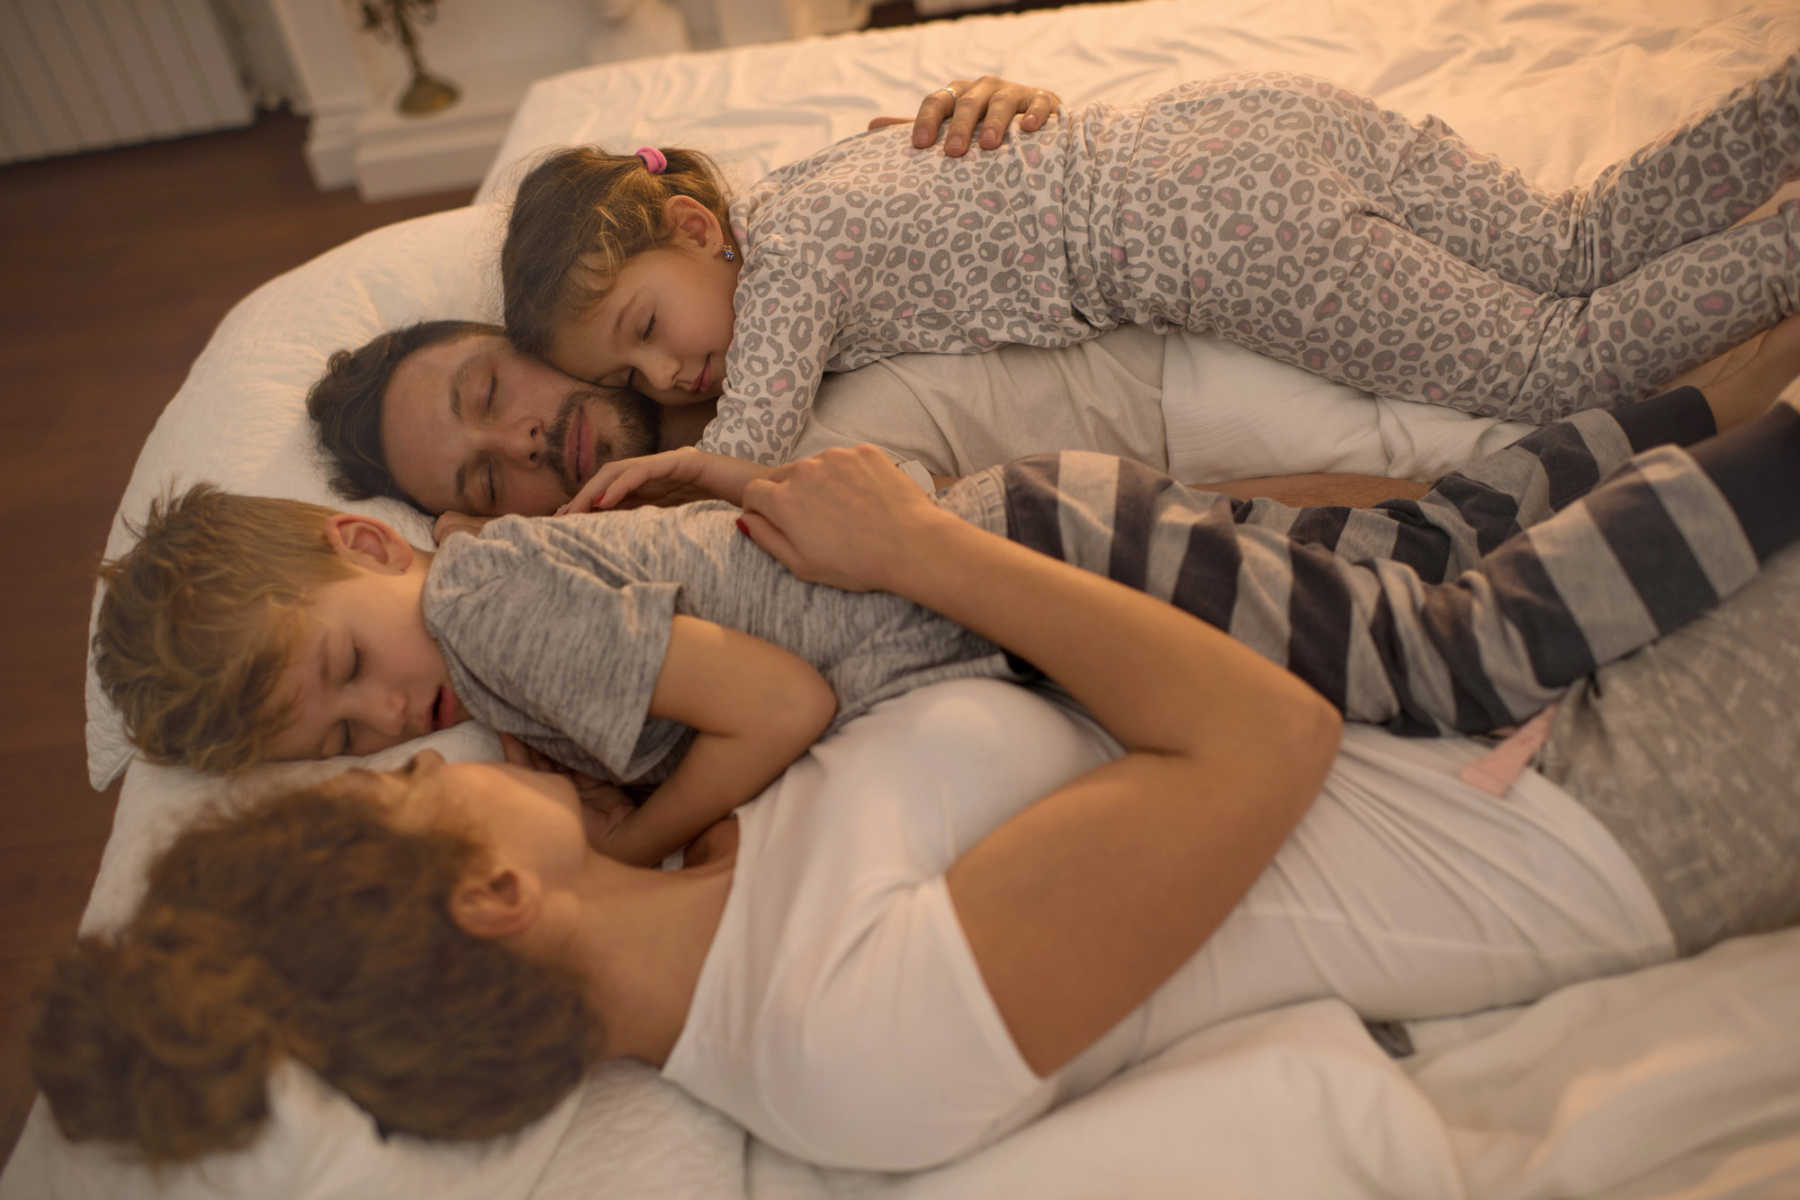 Real sleeping mom. Родители в постели. Трое в постели. Спящие сестры. Дети вместе спят в постели.